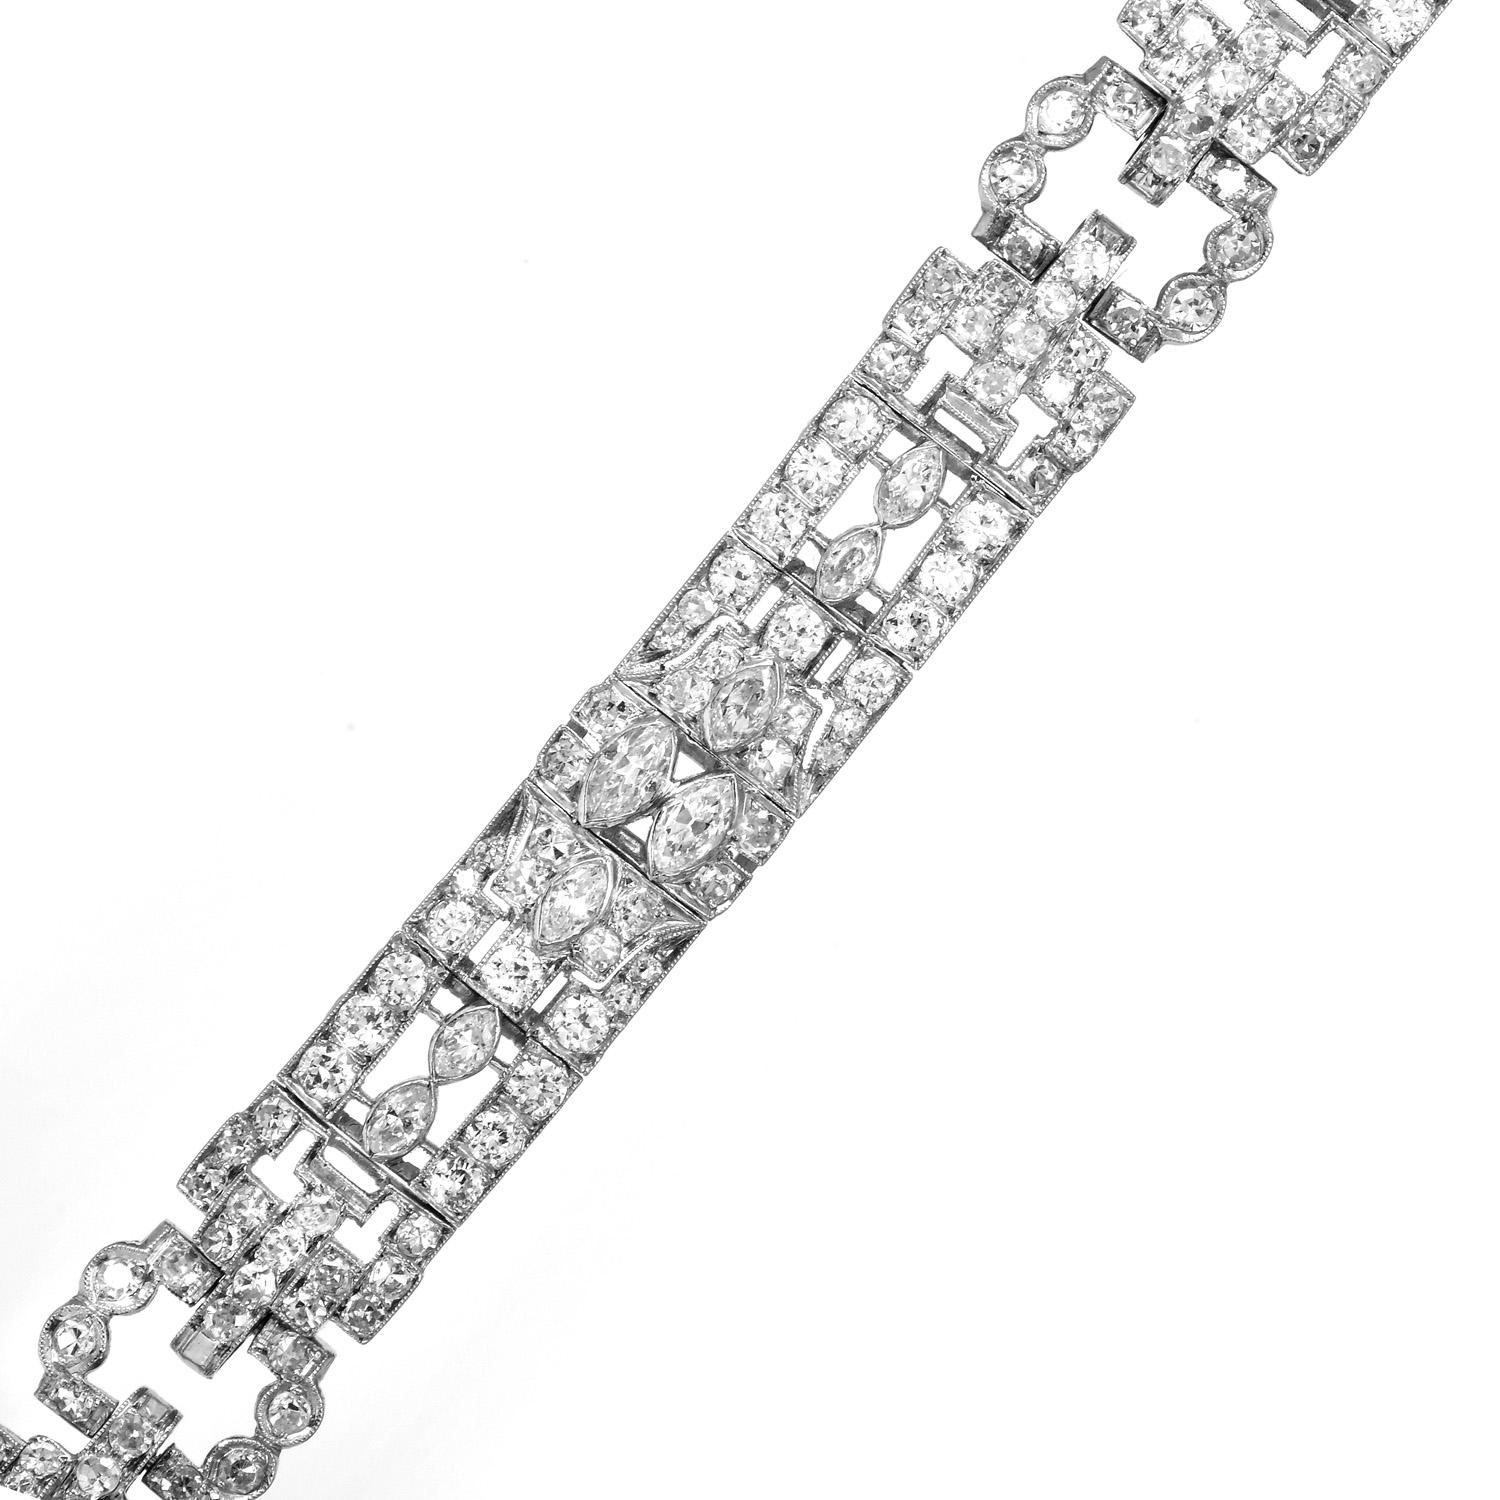 Erleben Sie die zarte Schönheit dieses geometrischen Art-Déco-Gliederarmbands.

Dieses bemerkenswert elegante und lebendige Armband ist aus hochwertigem Platin gefertigt.  In der Mitte der Glieder befinden sich 24 echte Diamanten im Marquise-Schliff